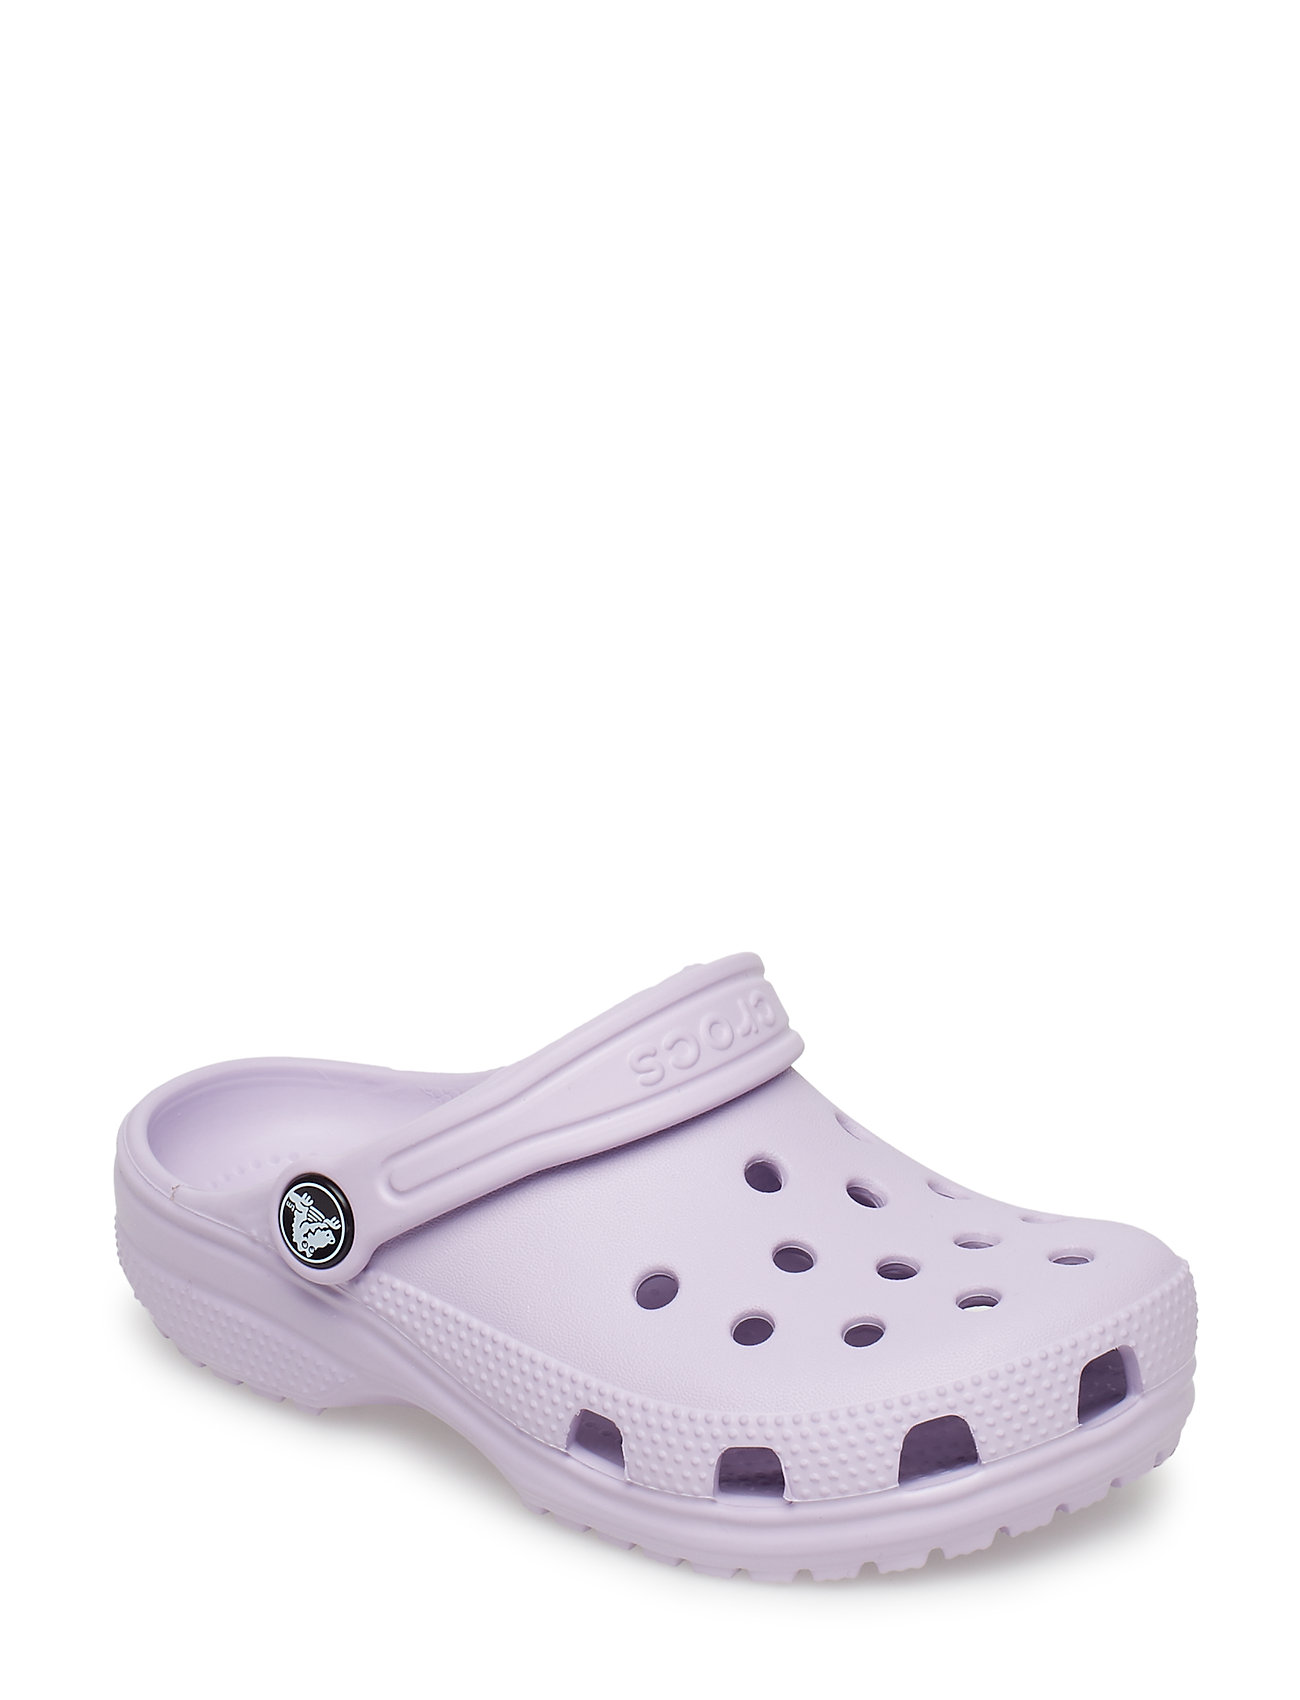 crocs lavender